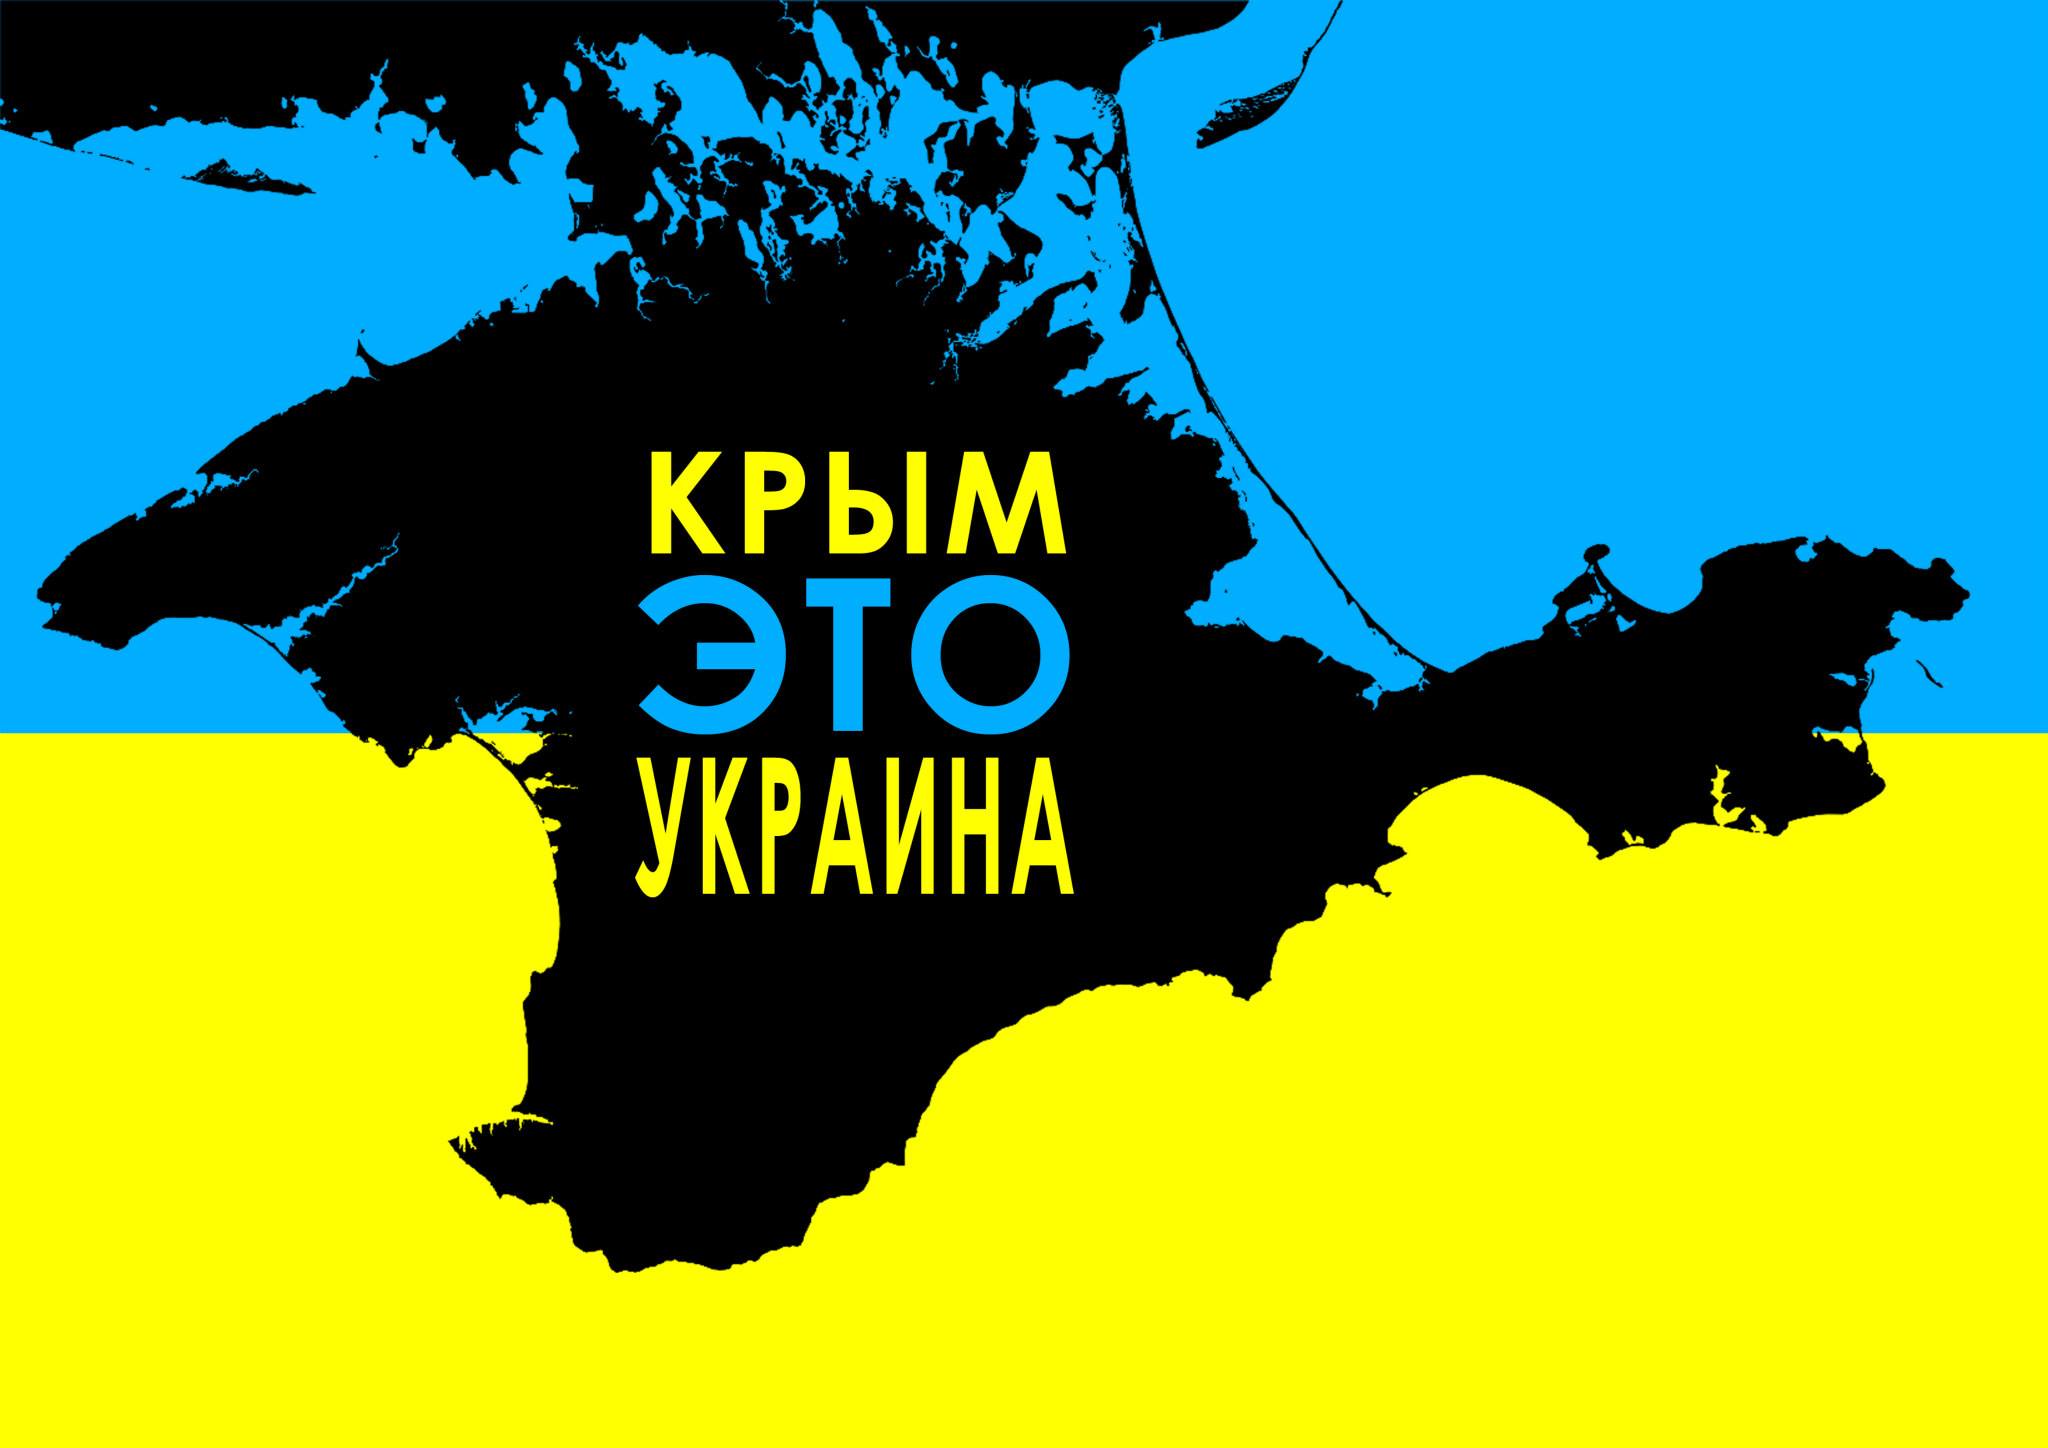 Порошенко: Цель блокады - восстановить государственный суверенитет Крыма